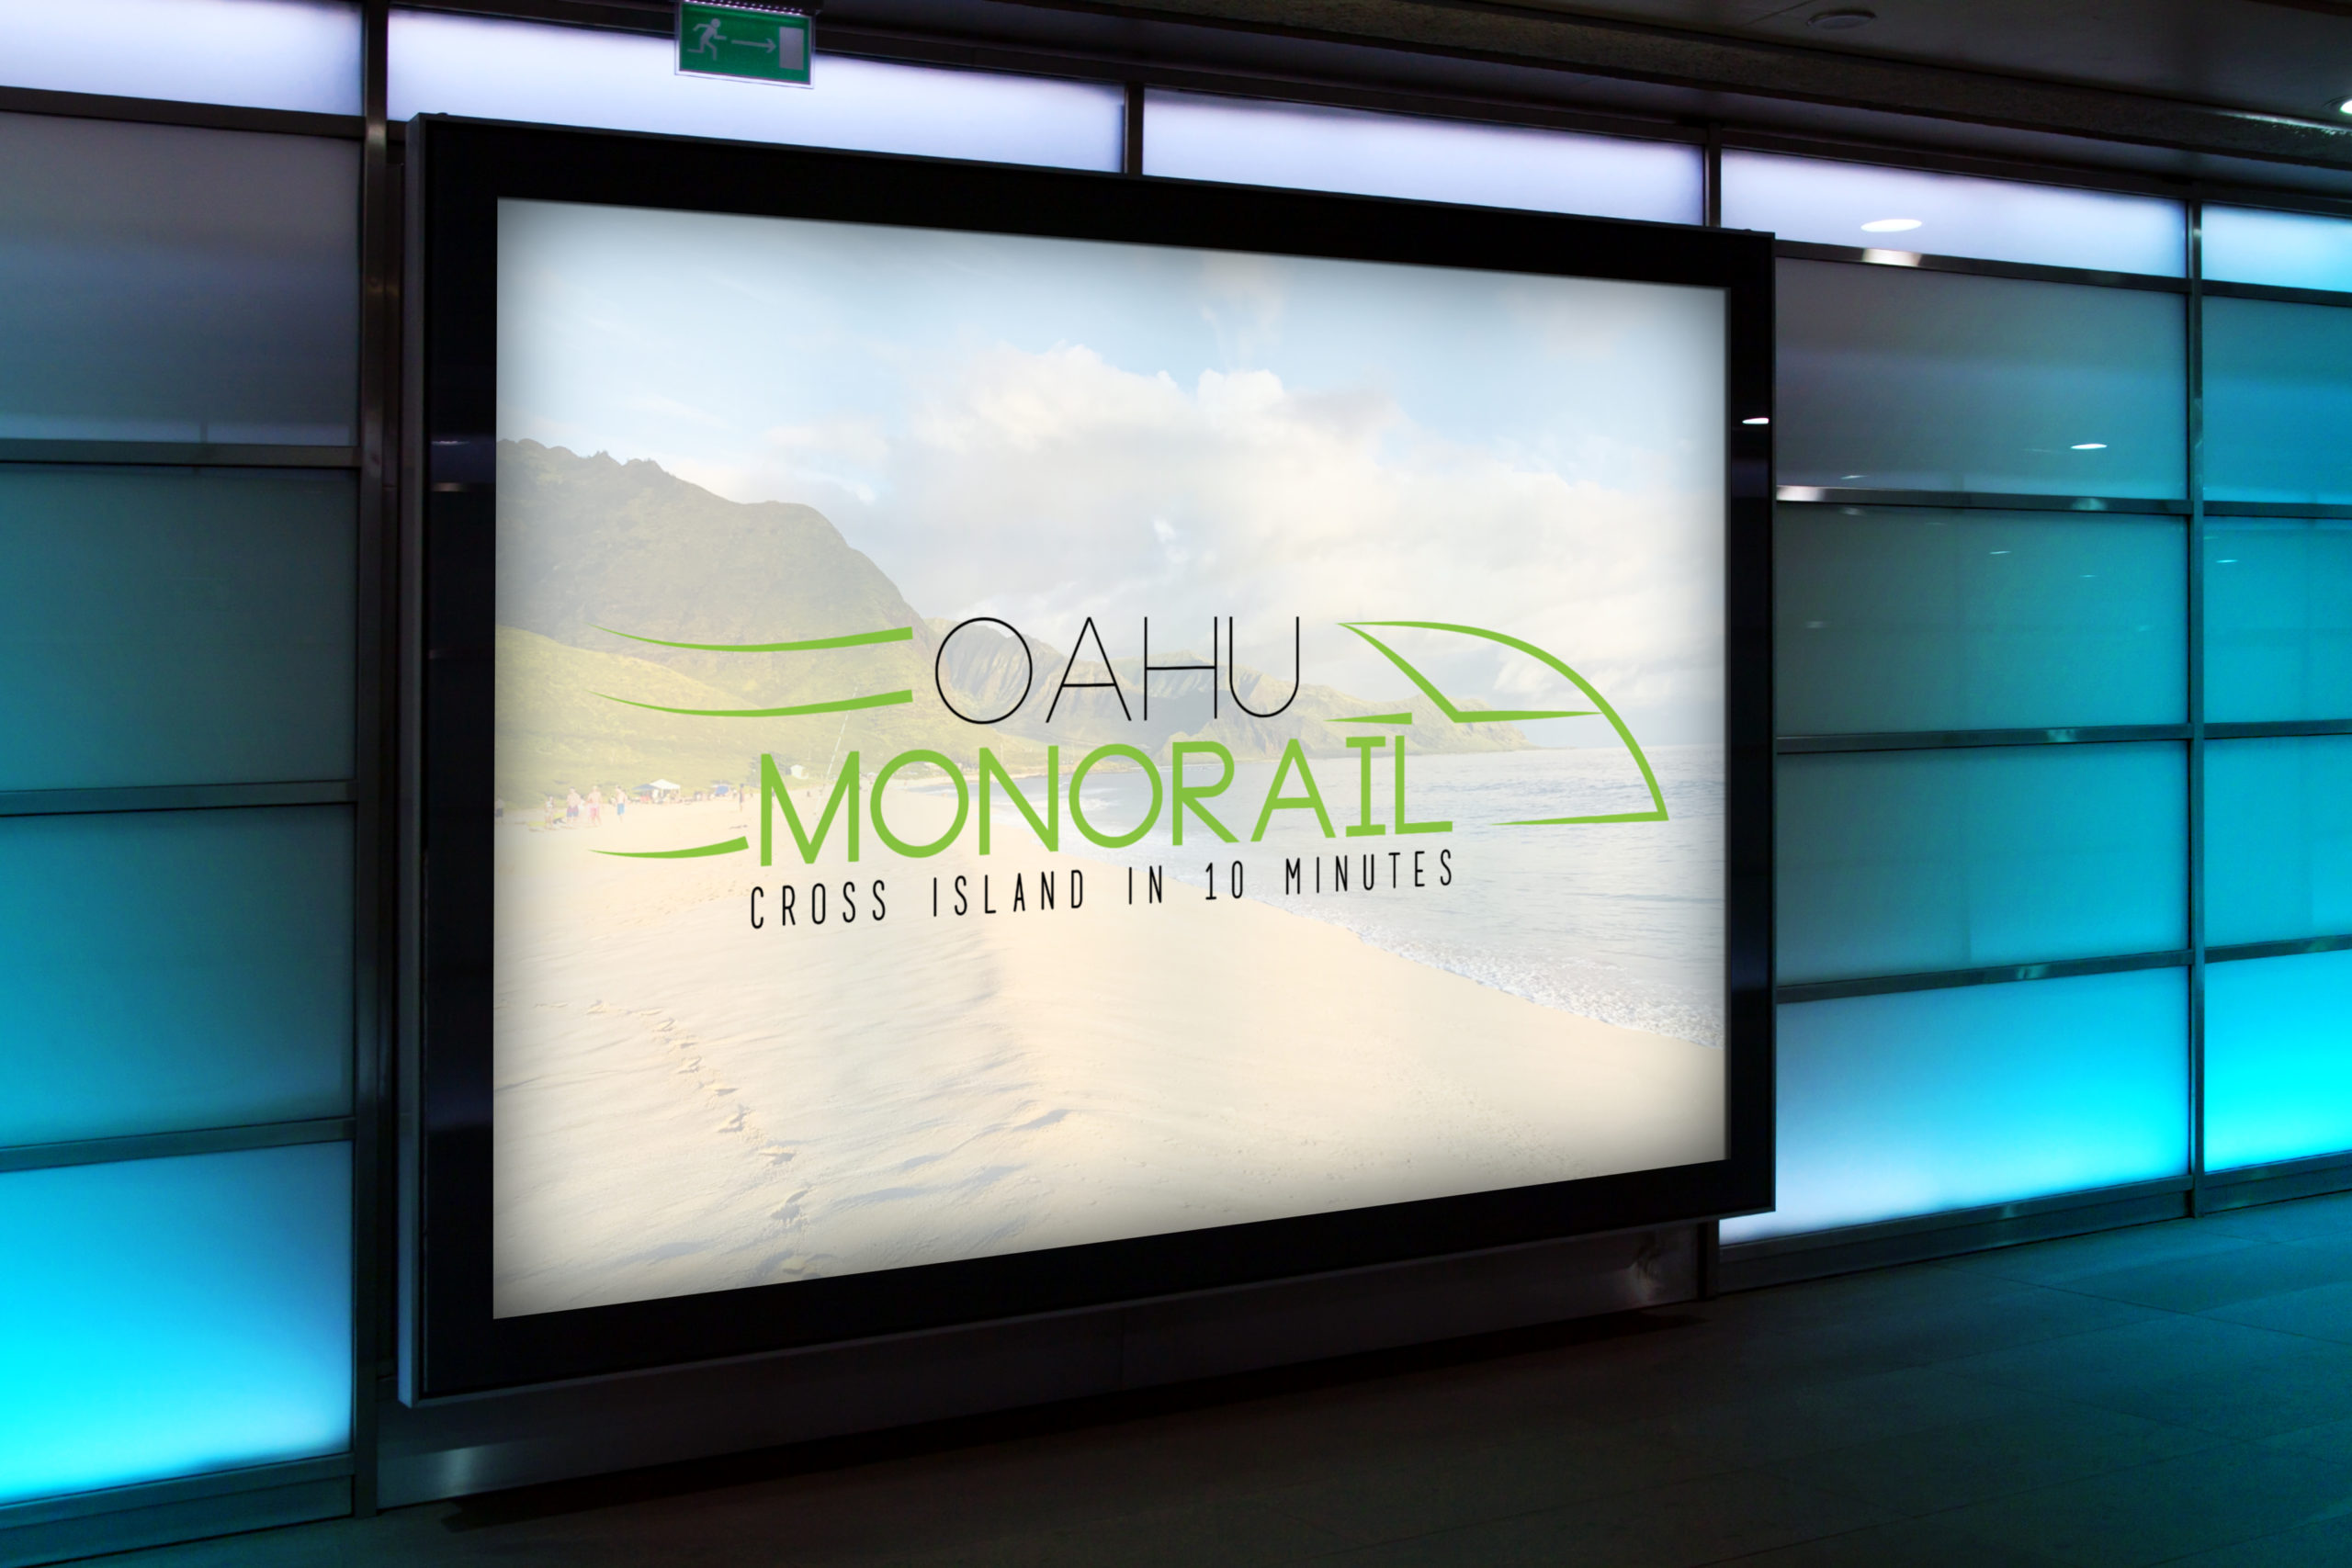 Oahu Monorail